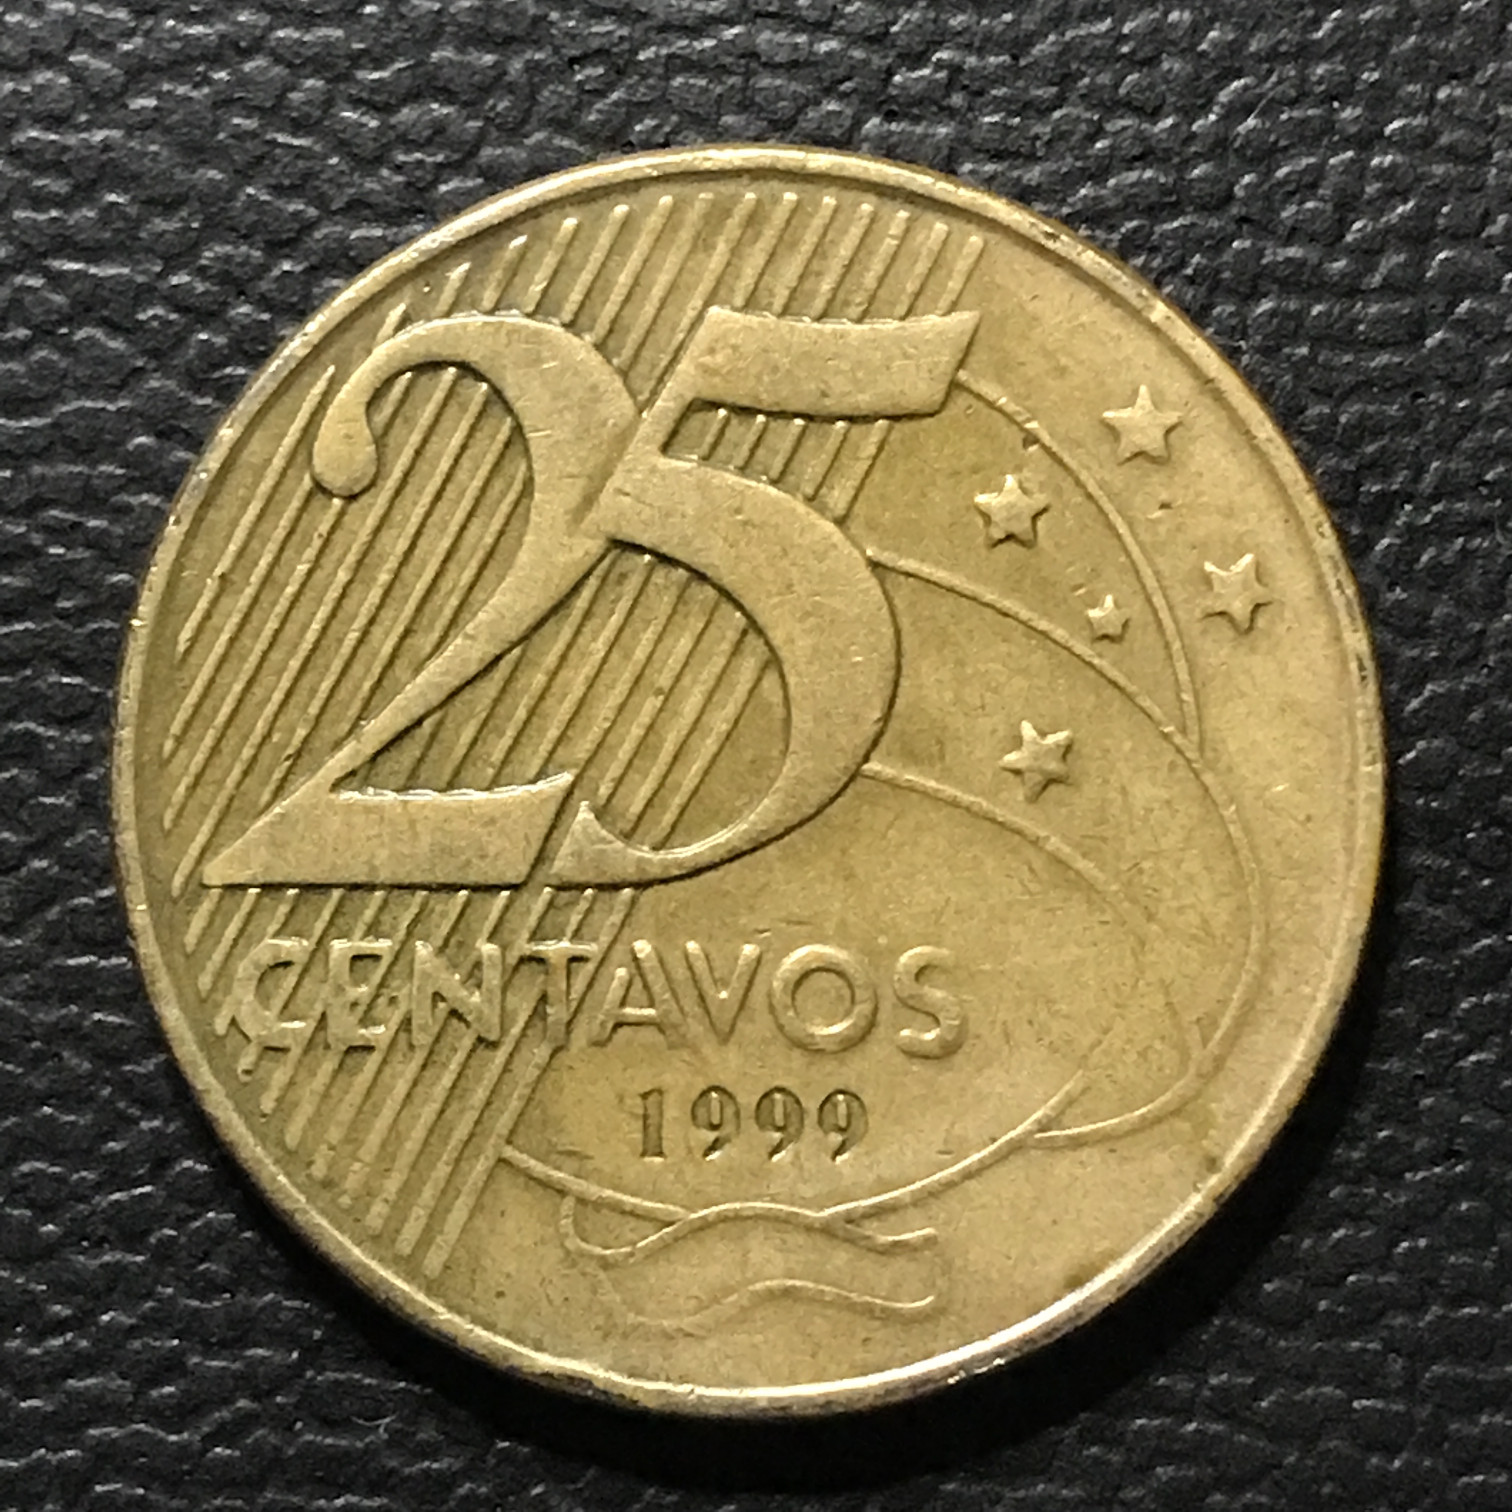 Exemplo de moeda de 25 centavos de 1999